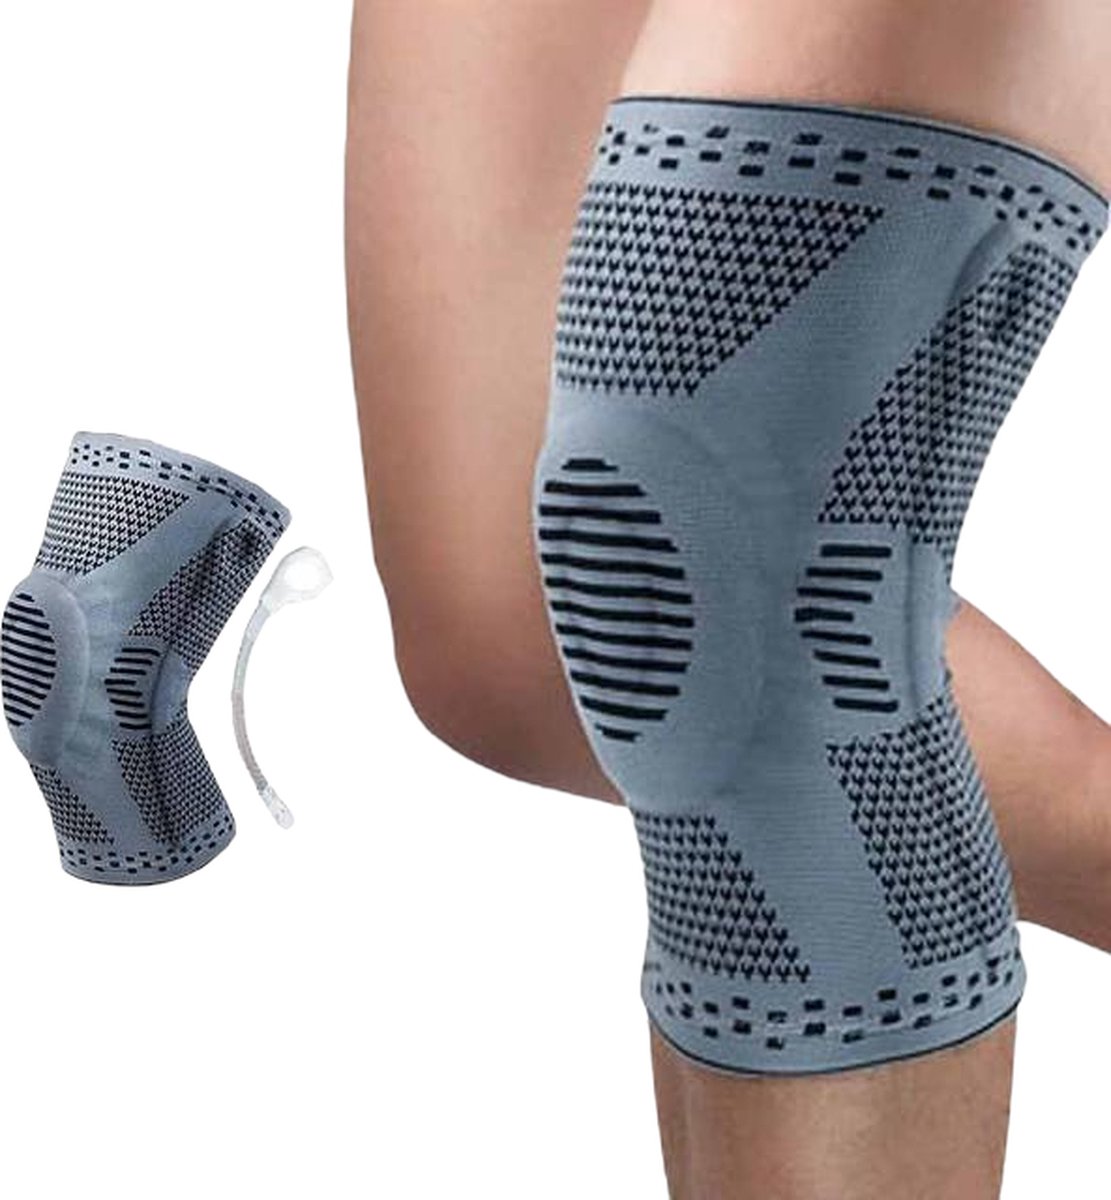 Chibaa - Knie band - Grijs - Maat: Large - Unisex - Knie Versterking - Orthopedische kniebrace voor kruisband - Knieband voor meniscus - Kniebeschermer - Patella - Compressie kniebandage blessure - Sporten - Bescherming - Chibaa